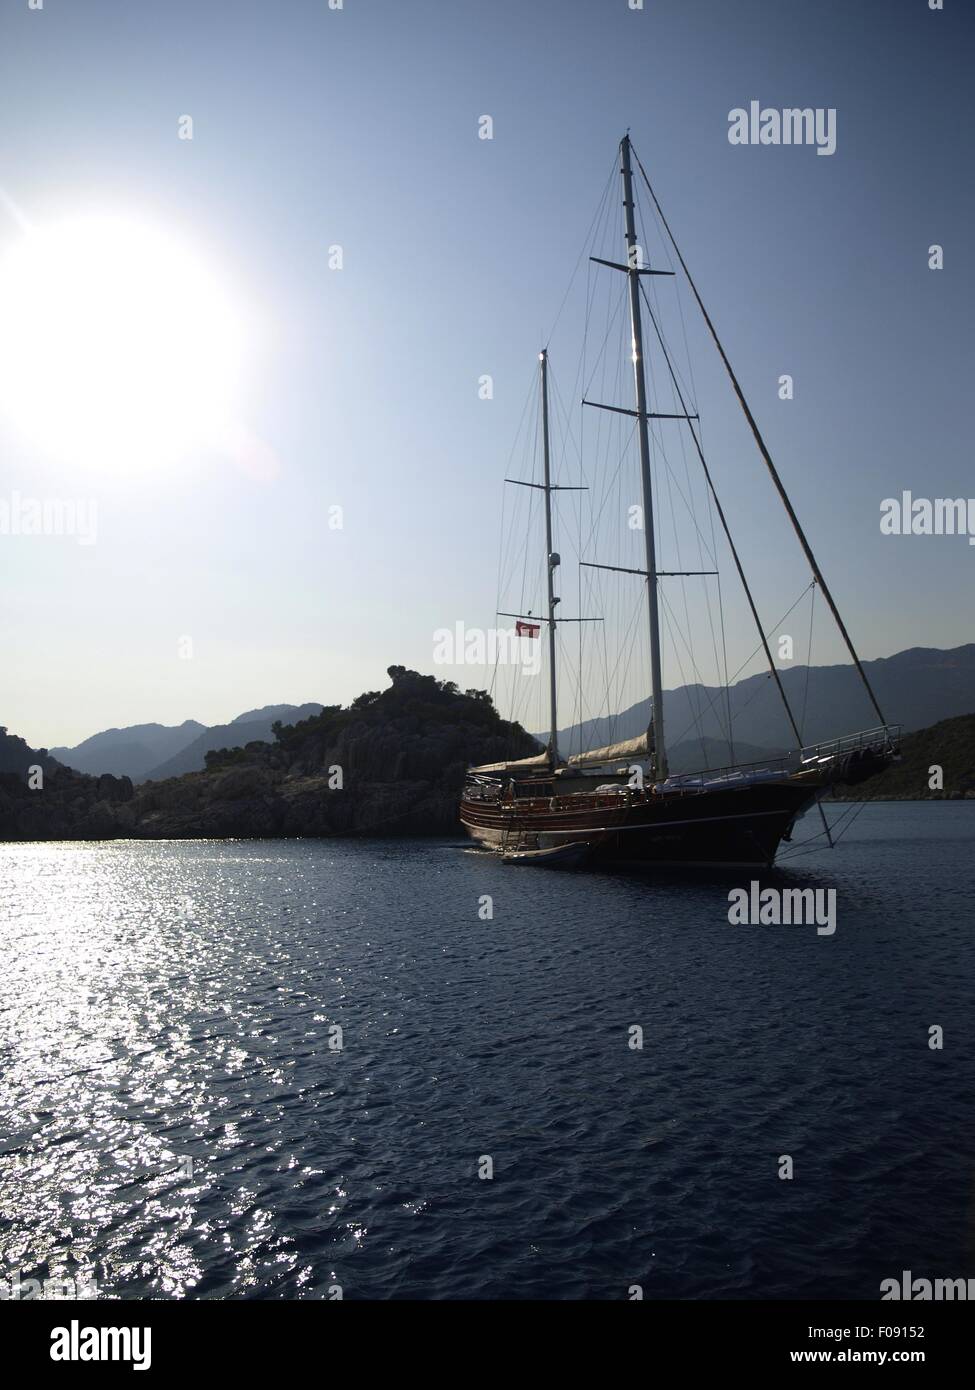 Sailboat in sea, Antalya, Turkey Stock Photo